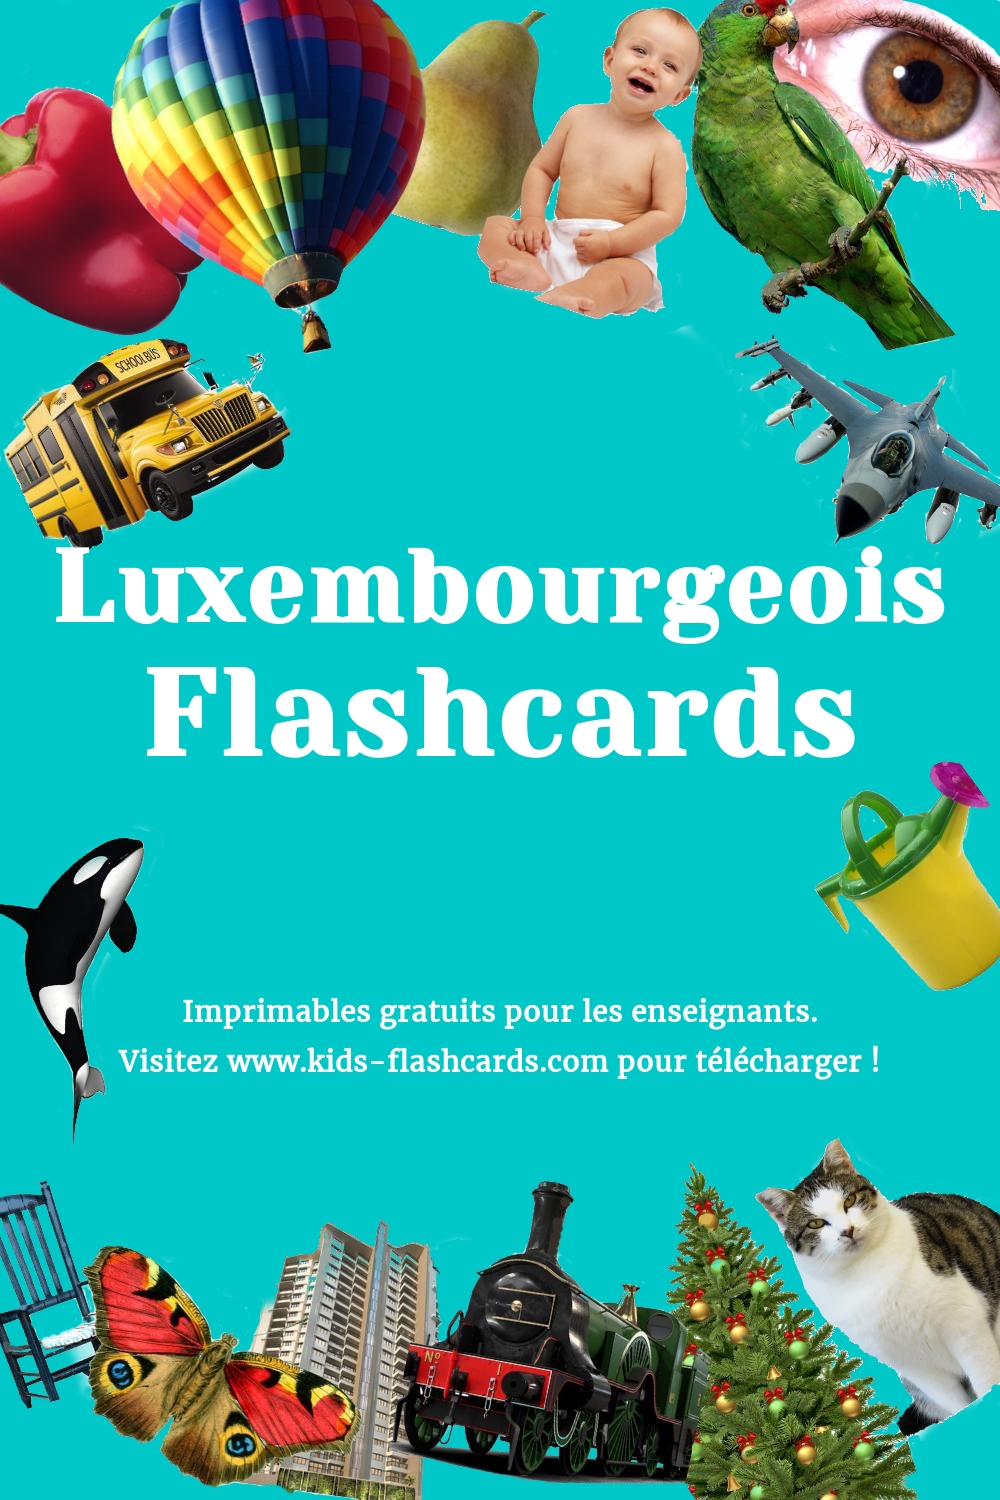 Imprimables gratuits en Luxembourgeois